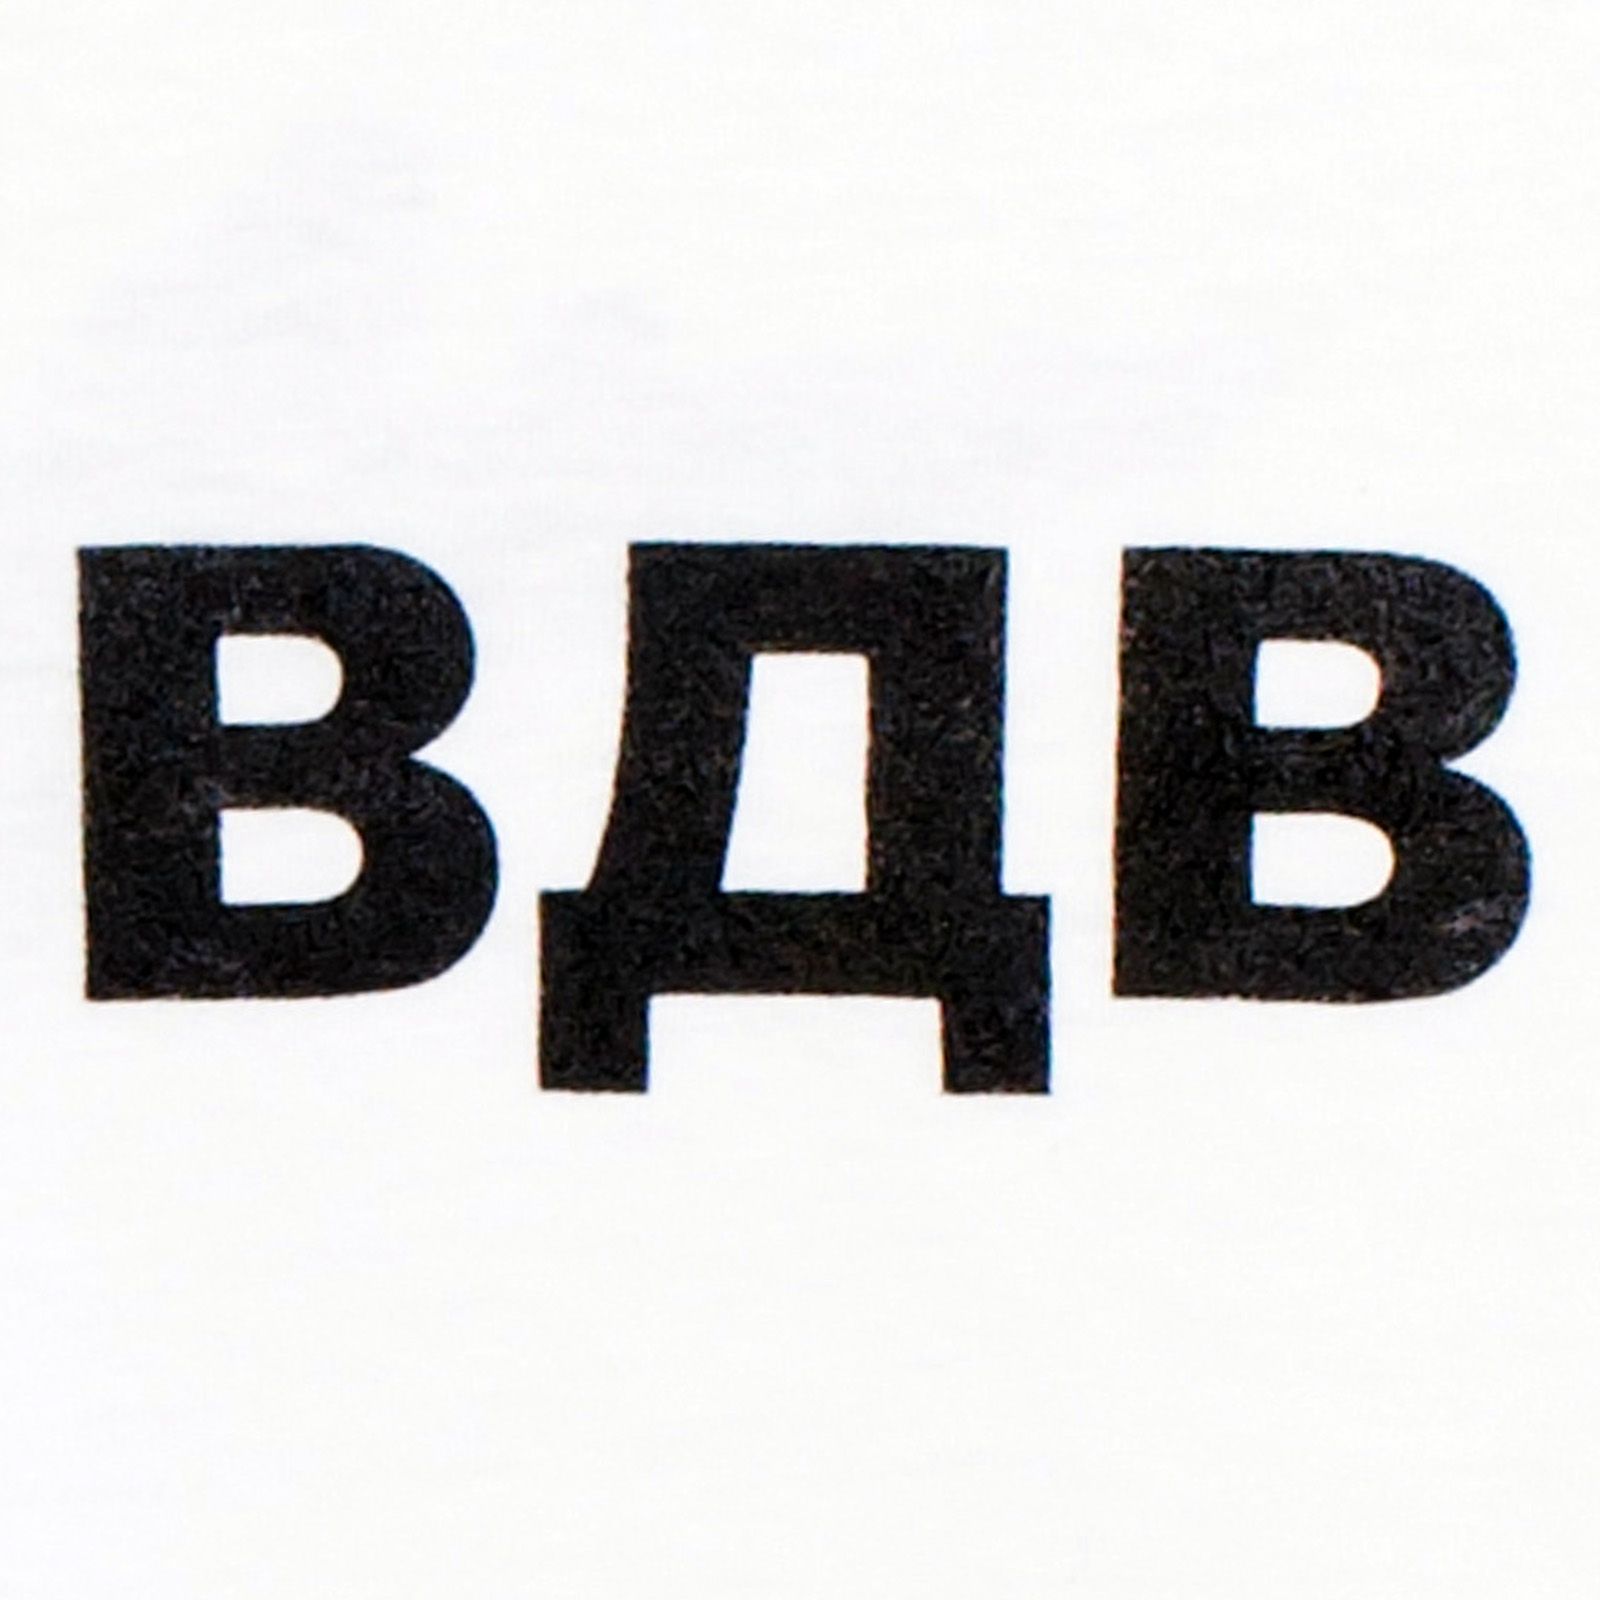 Однотонная мужская футболка ВДВ с эмблемой десанта 